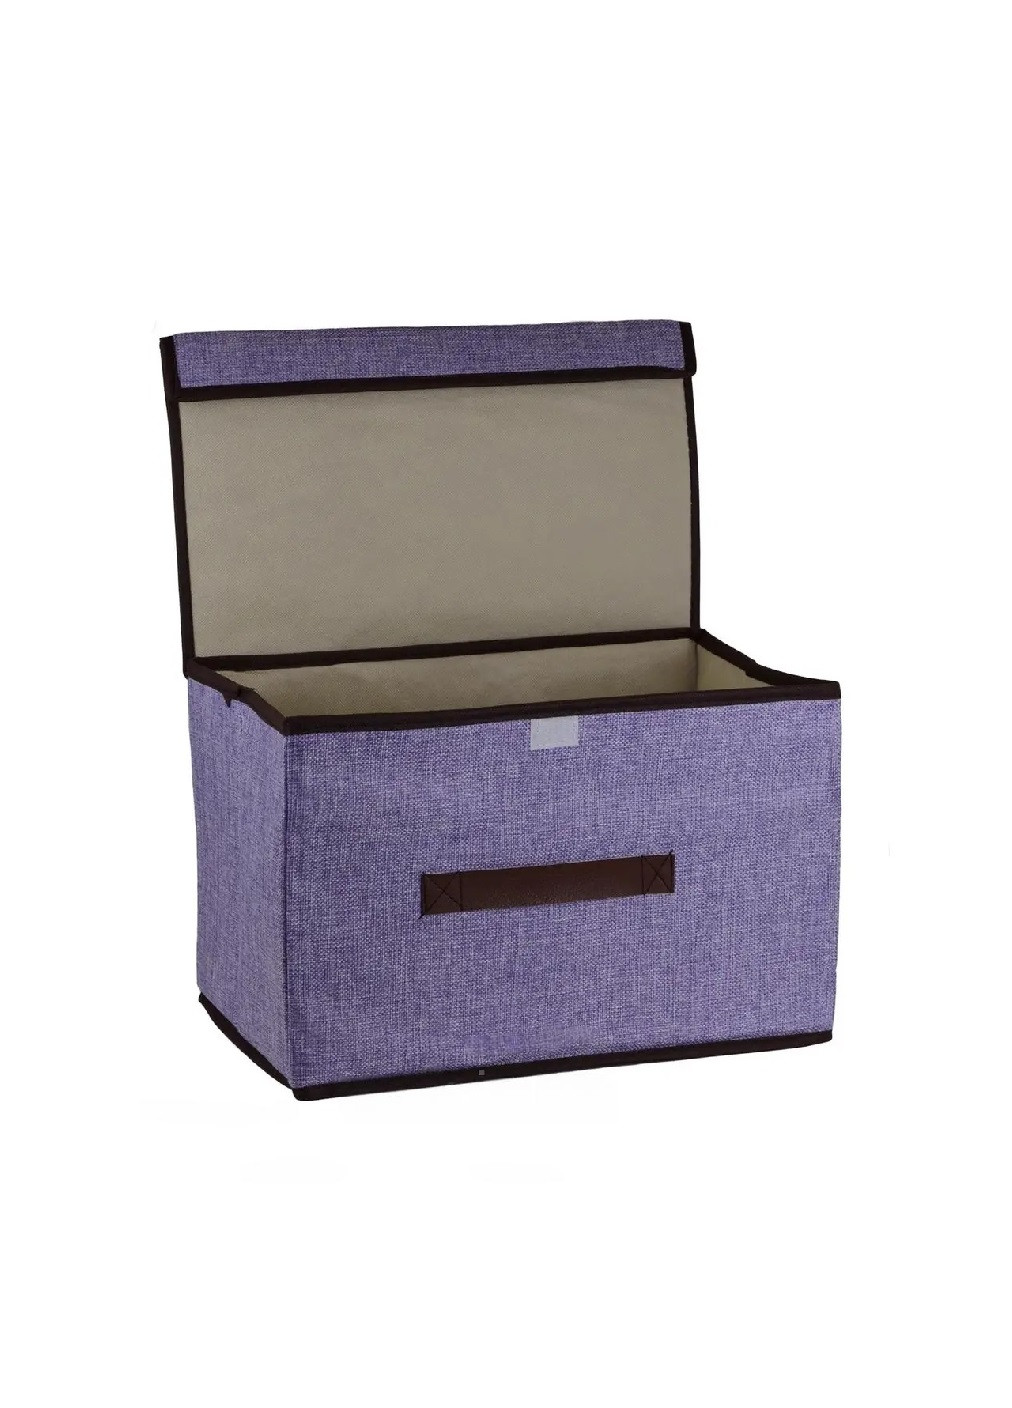 Органайзер короб ящик бокс для хранения вещей одежды белья игрушек аксессуаров 37х23х23.5 см (475839-Prob) Фиолетовый Unbranded (272097211)